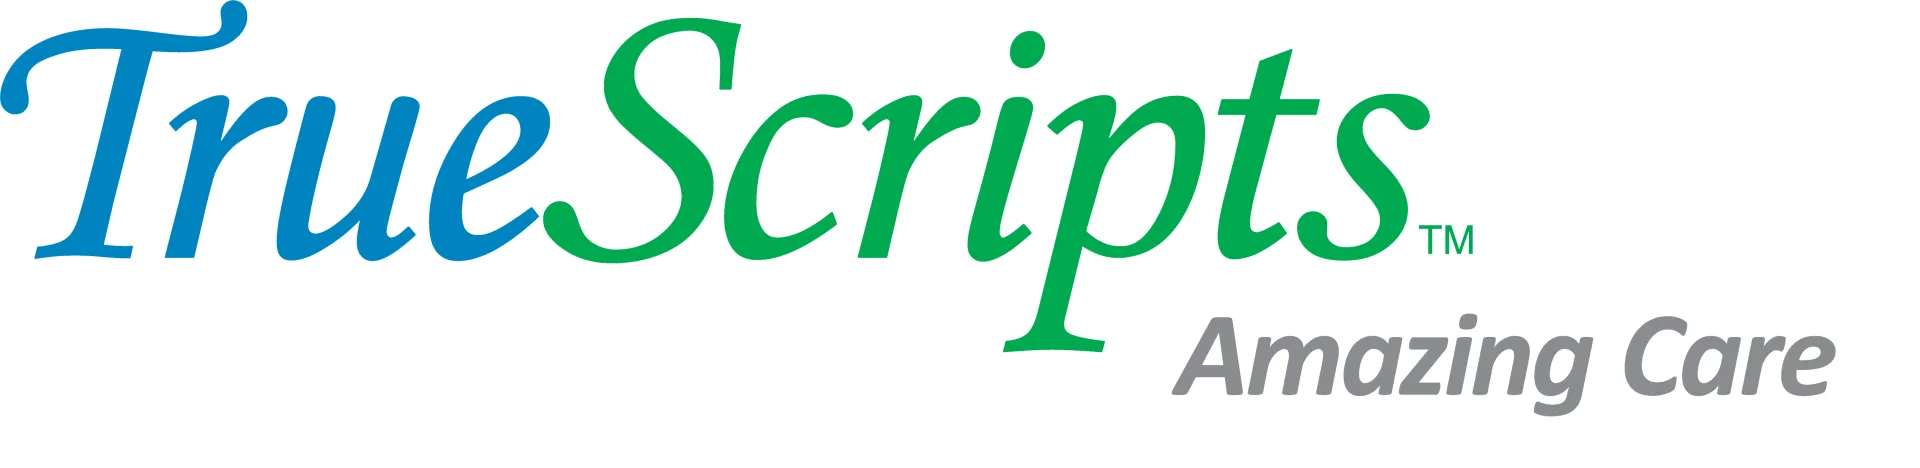 TrueScripts-logo-1200x630-1920w